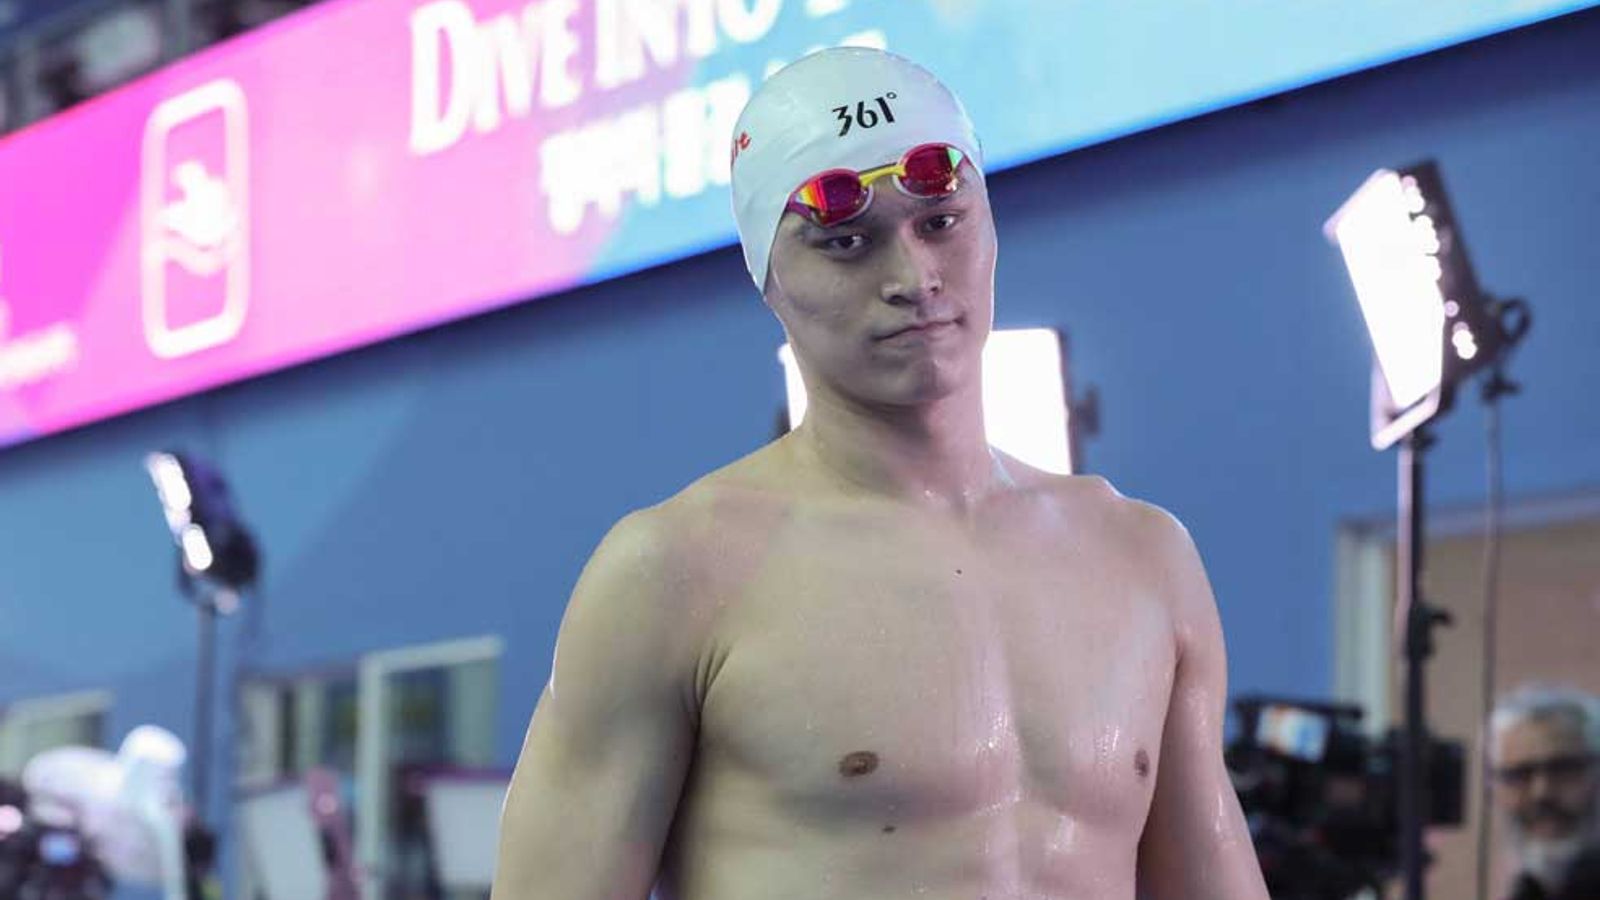 Schwimmen News Sun scheitert mit Einspruch gegen Dopingsperre Schwimmen News Sky Sport